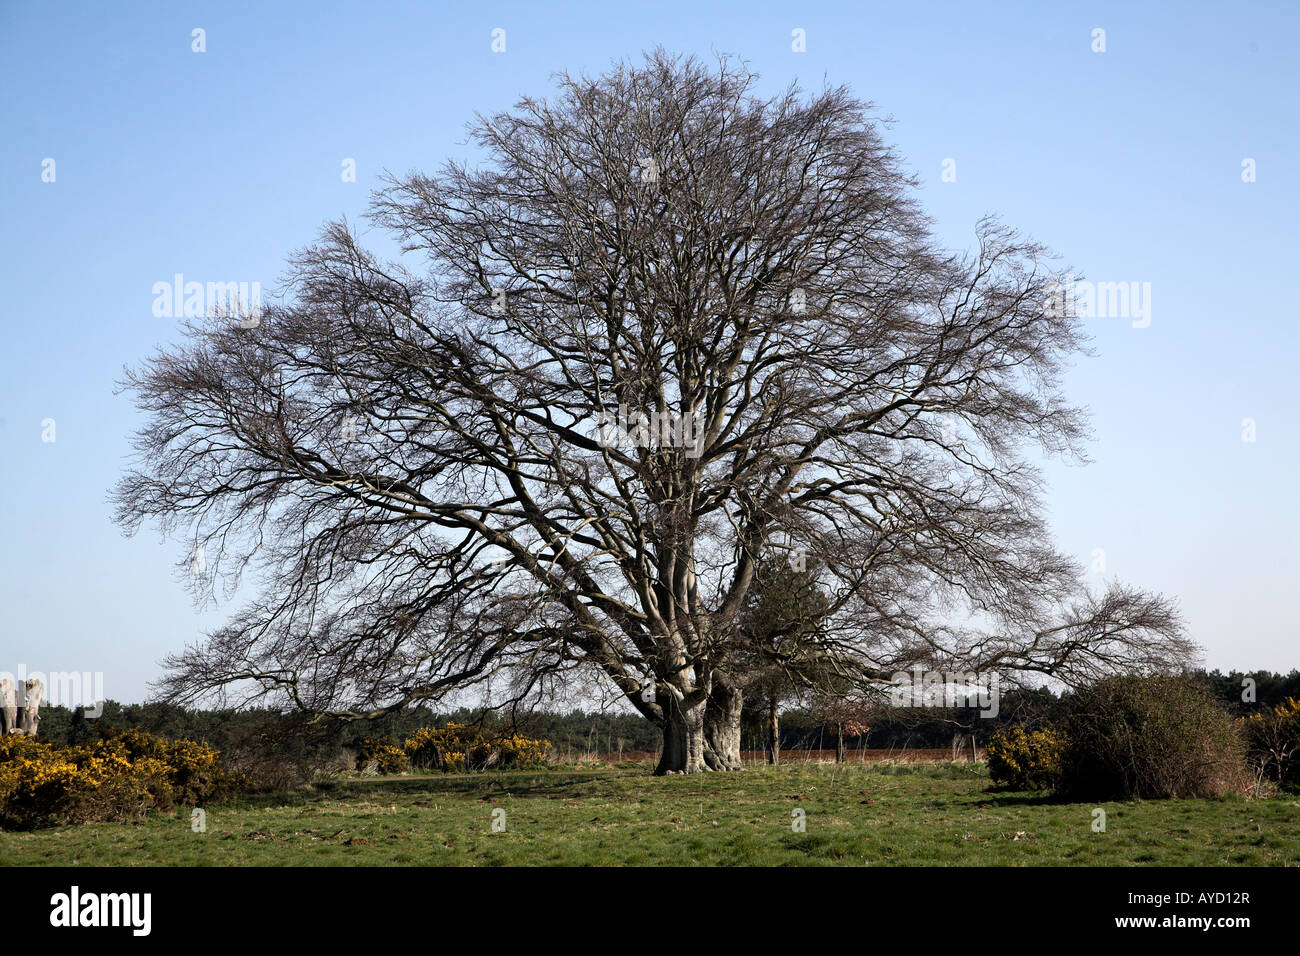 Common Beech tree in winter, Butley, Suffolk, England - fagus sylvatica Stock Photo